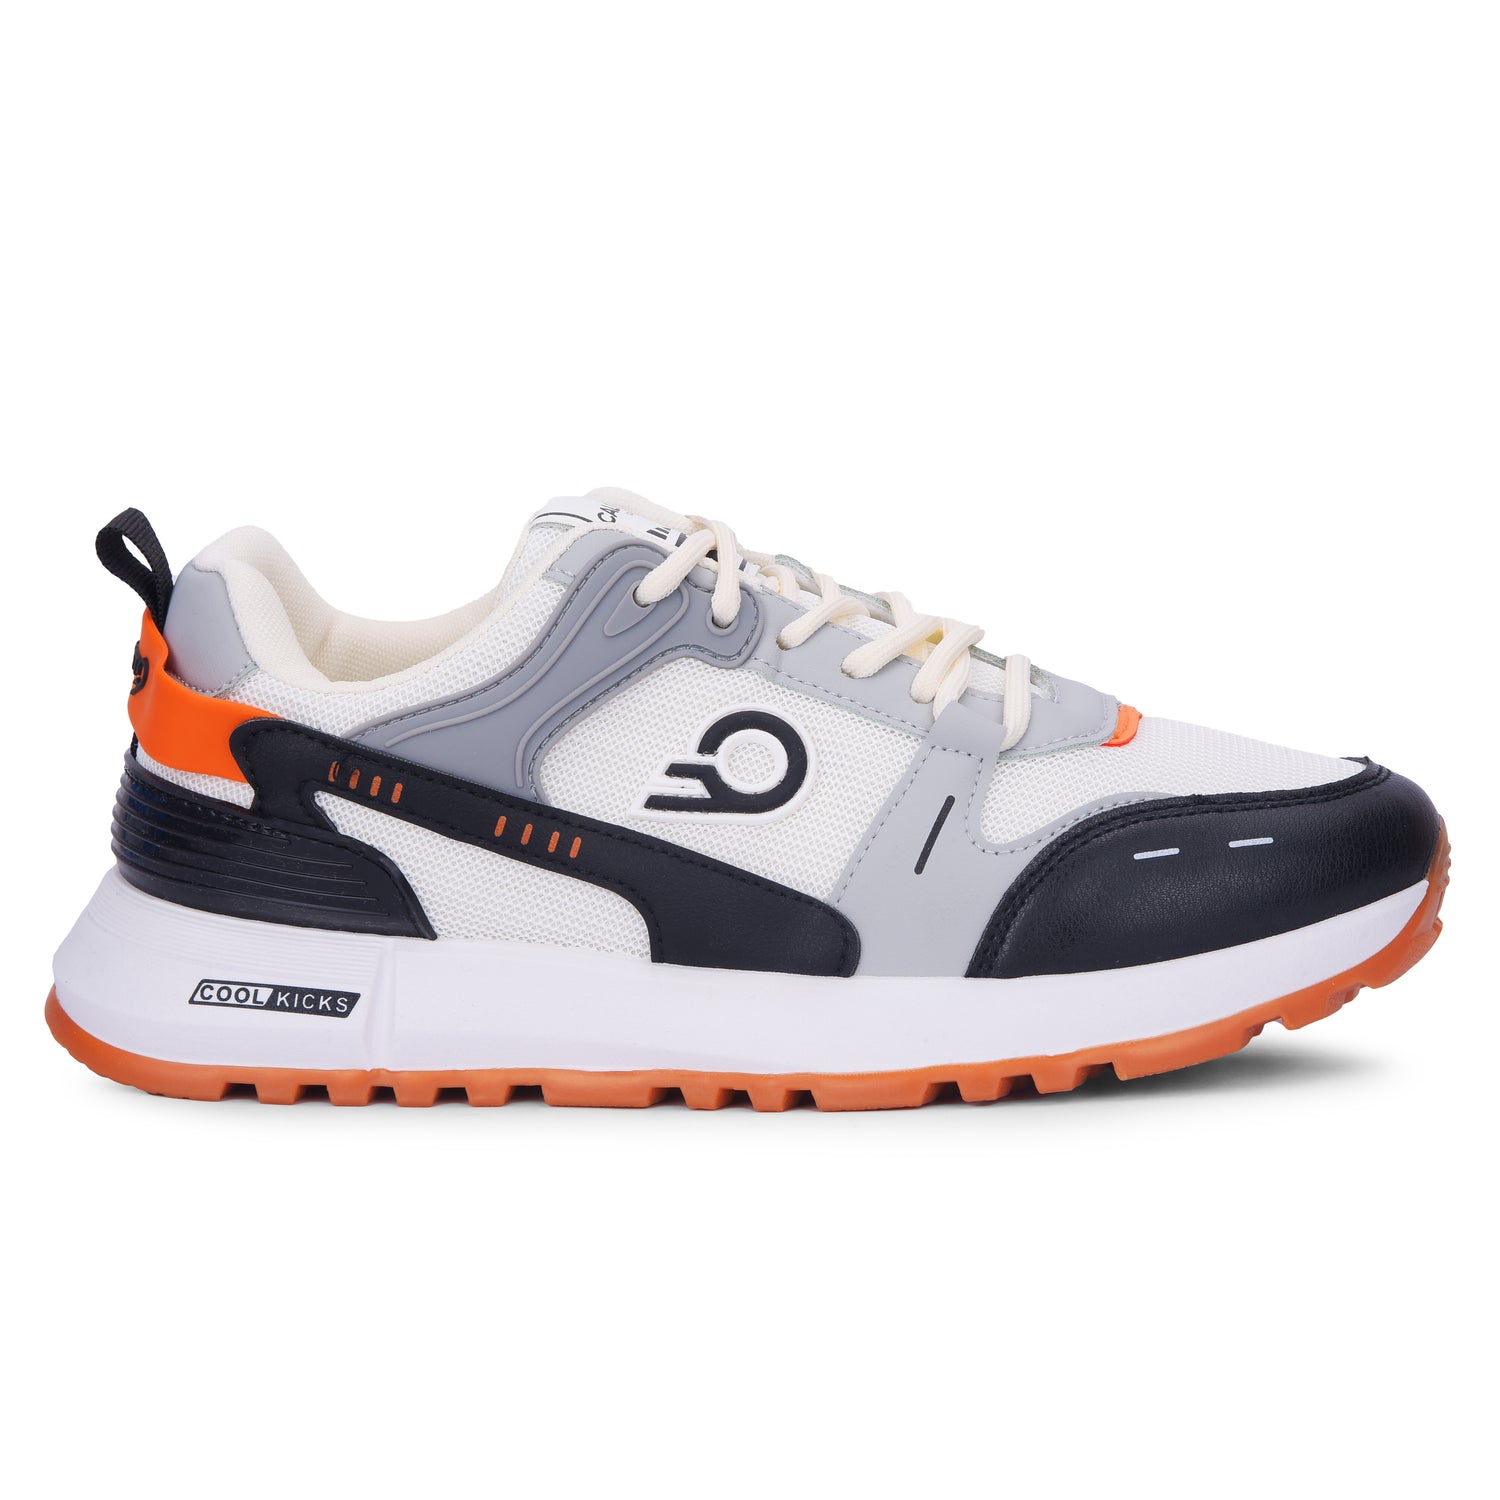 Calcetto CLT-2020 White Black Men Sneaker